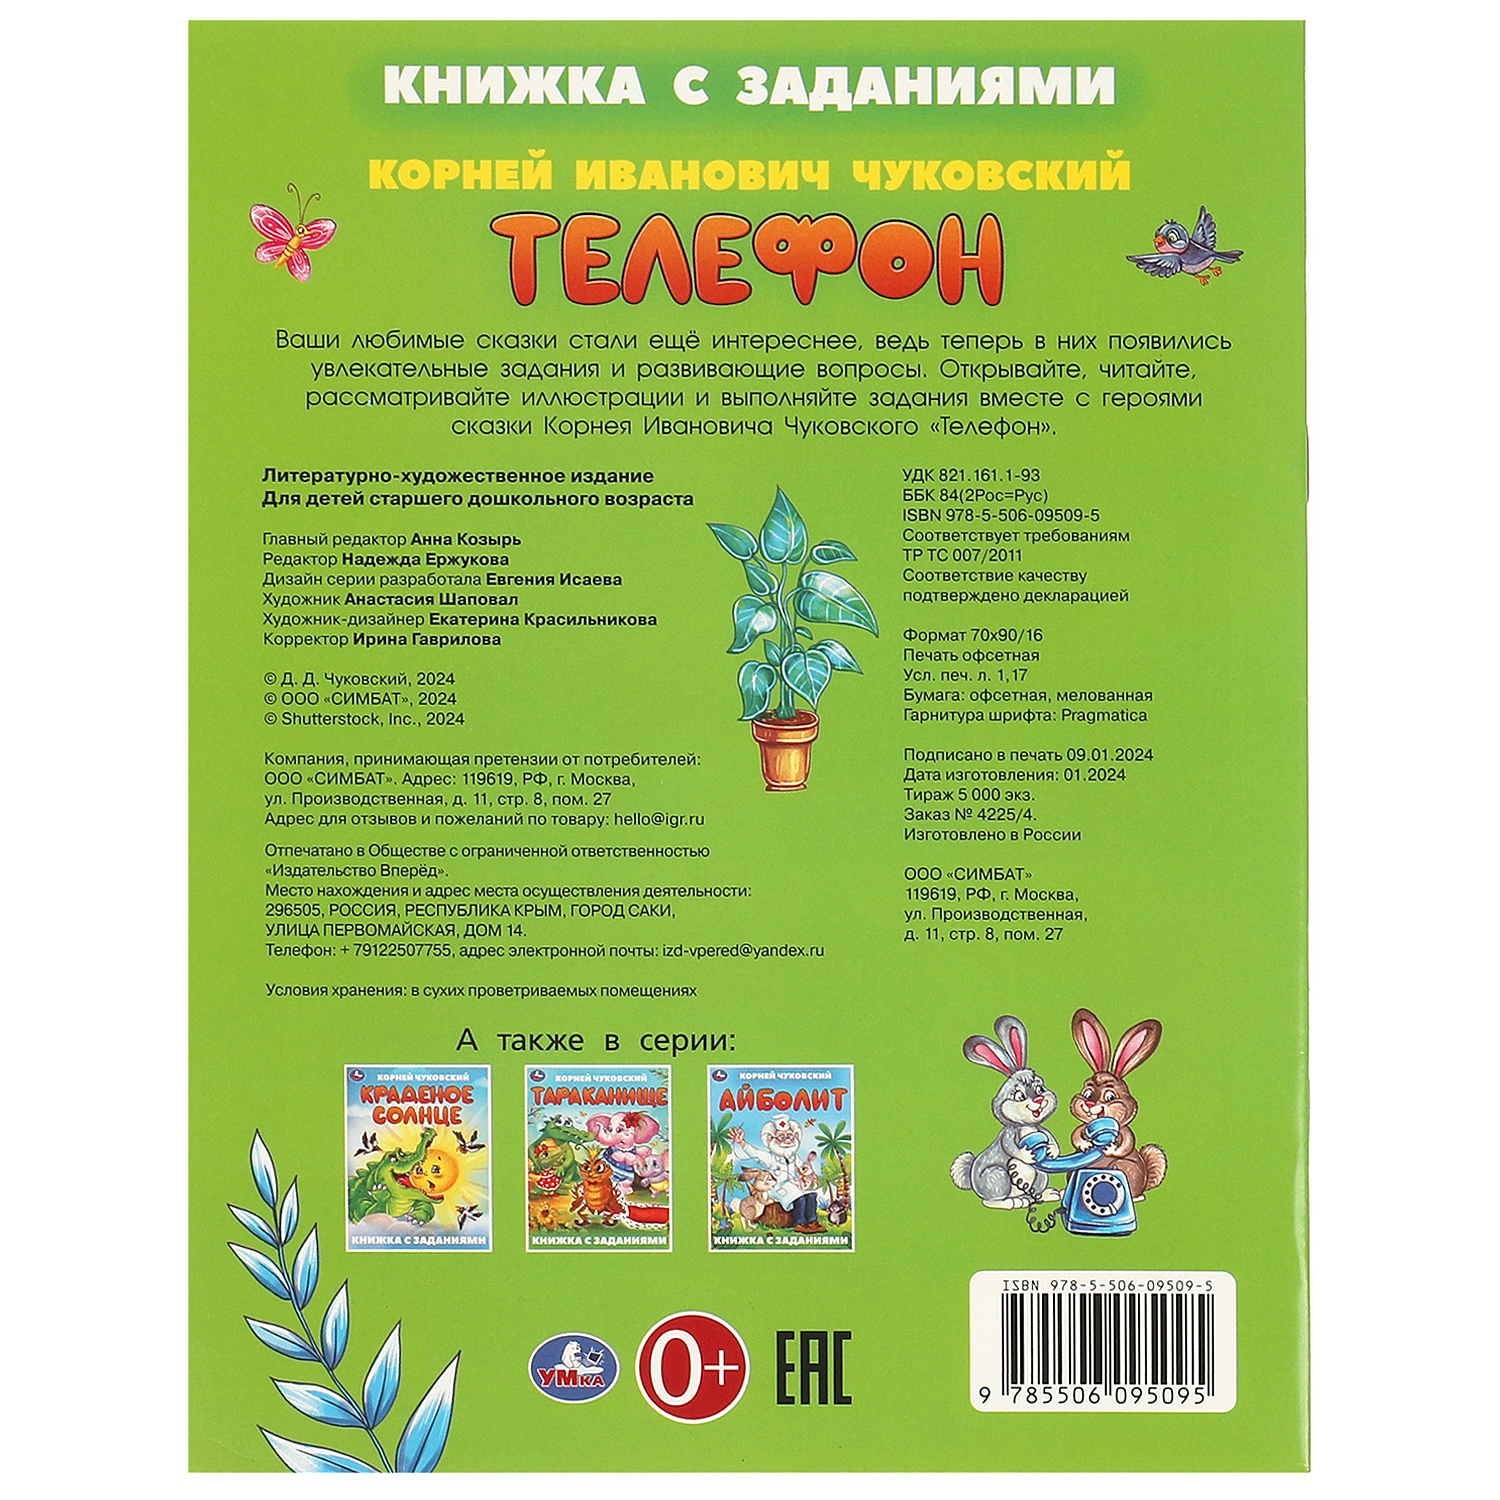 Книга Умка Телефон Чуковский - фото 5